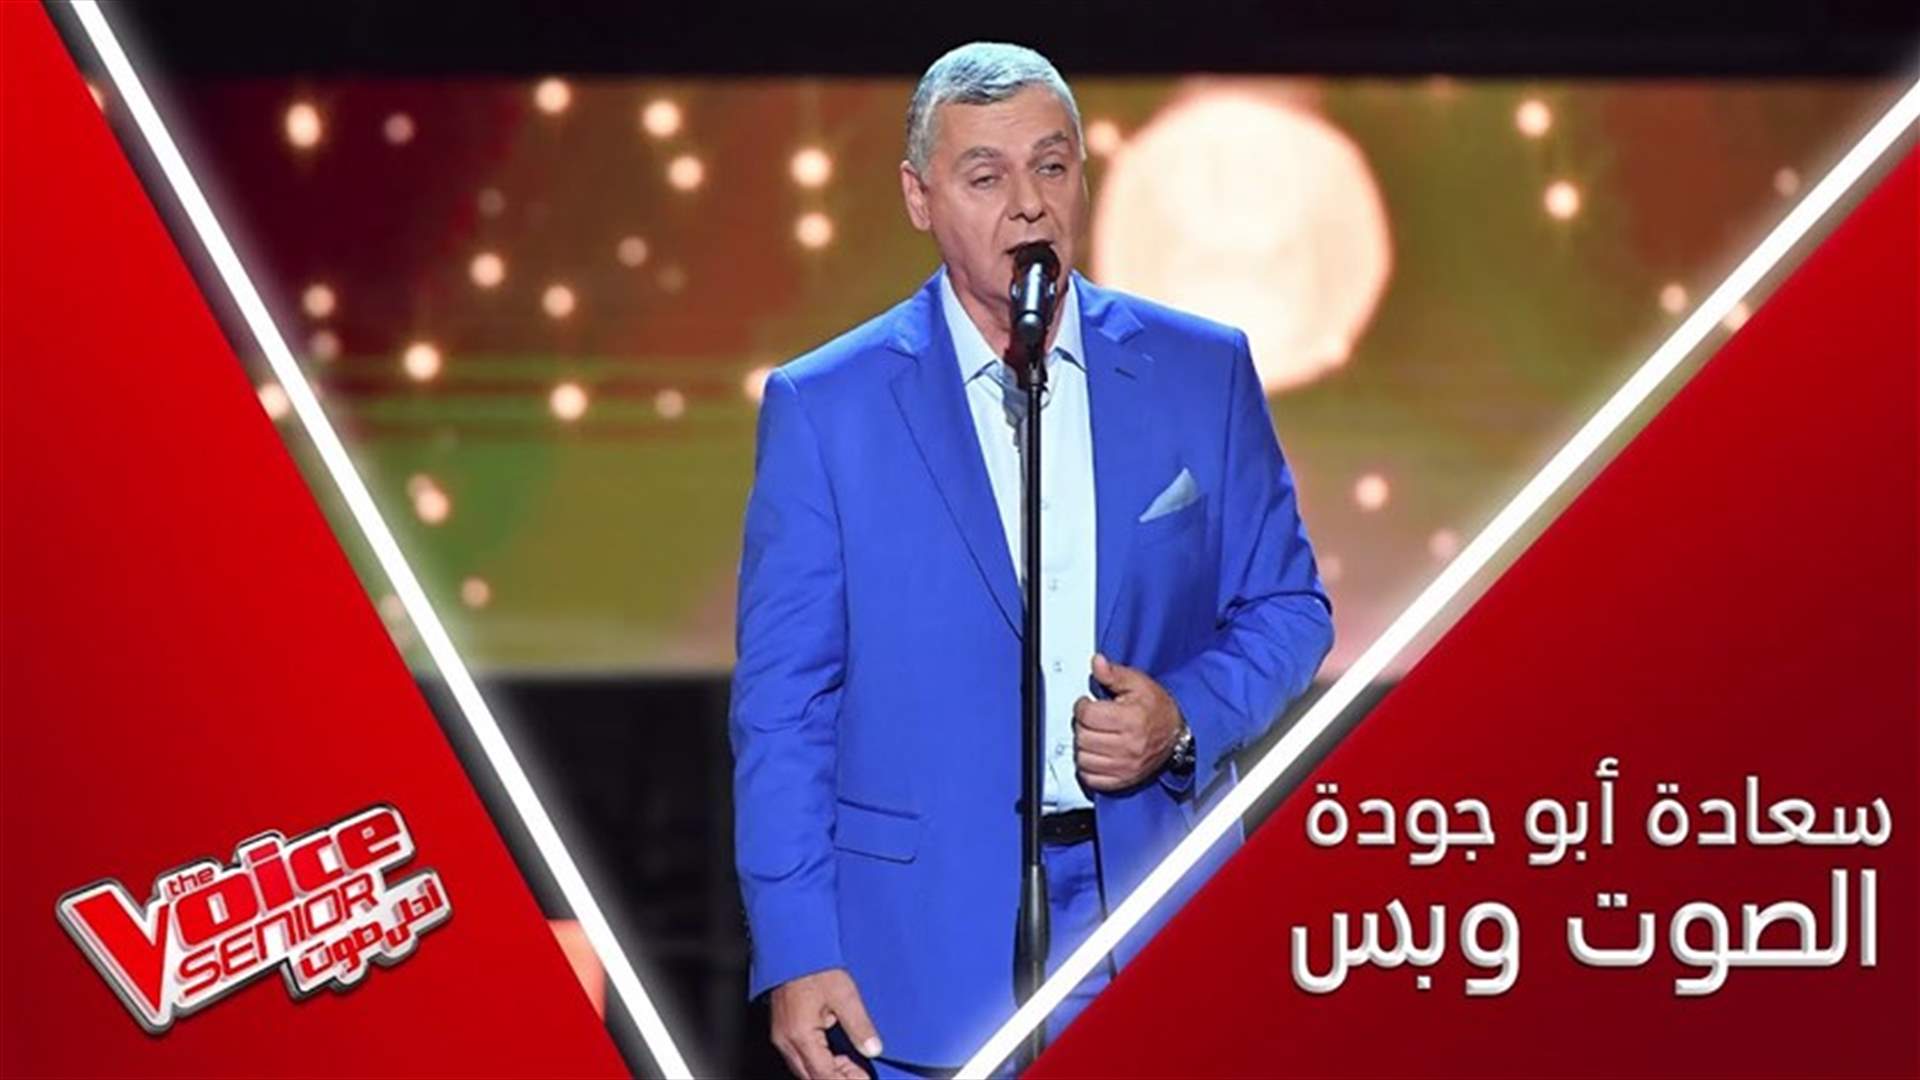 اللبناني سعادة أبو جودة يذهل لجنة تحكيم The Voice senior... فأي مدرّب اختار؟ (فيديو)